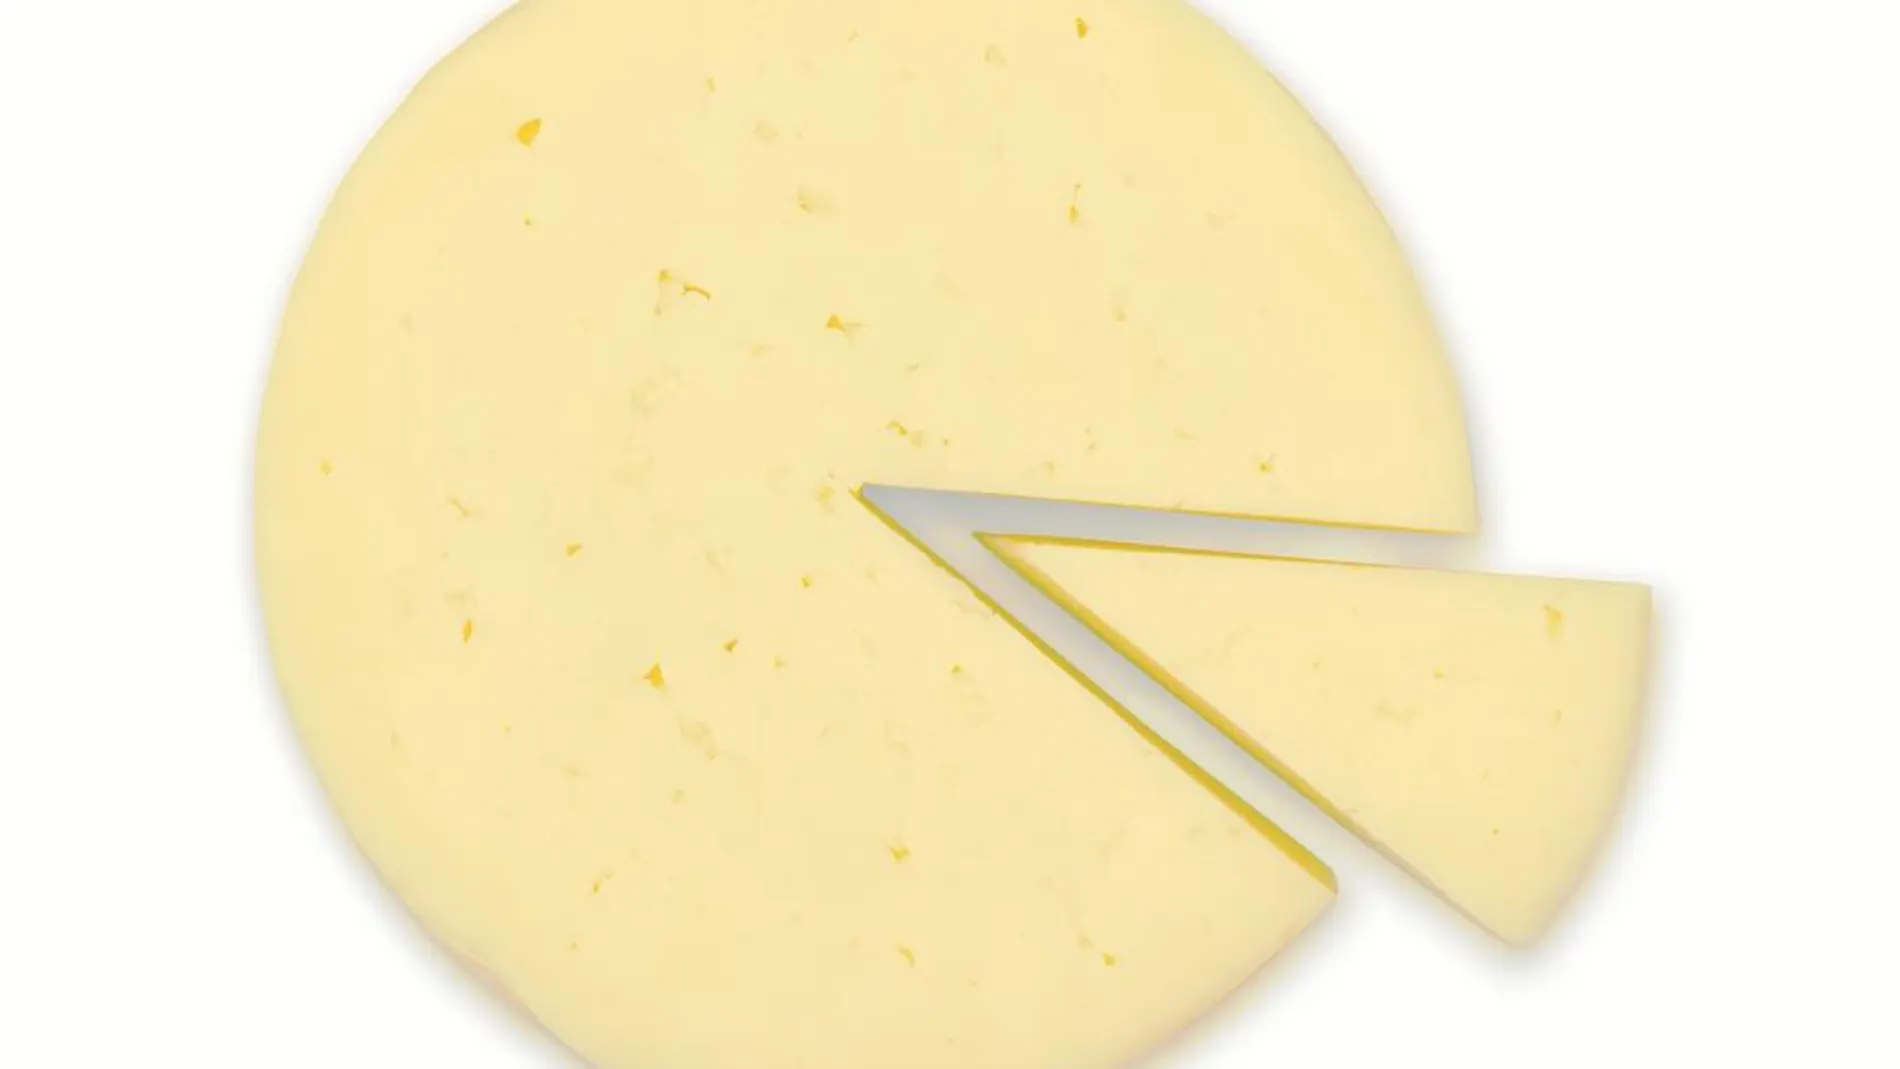 El queso que ha desatado la polémica está compuesto a base de nata fresca y finas hierbas